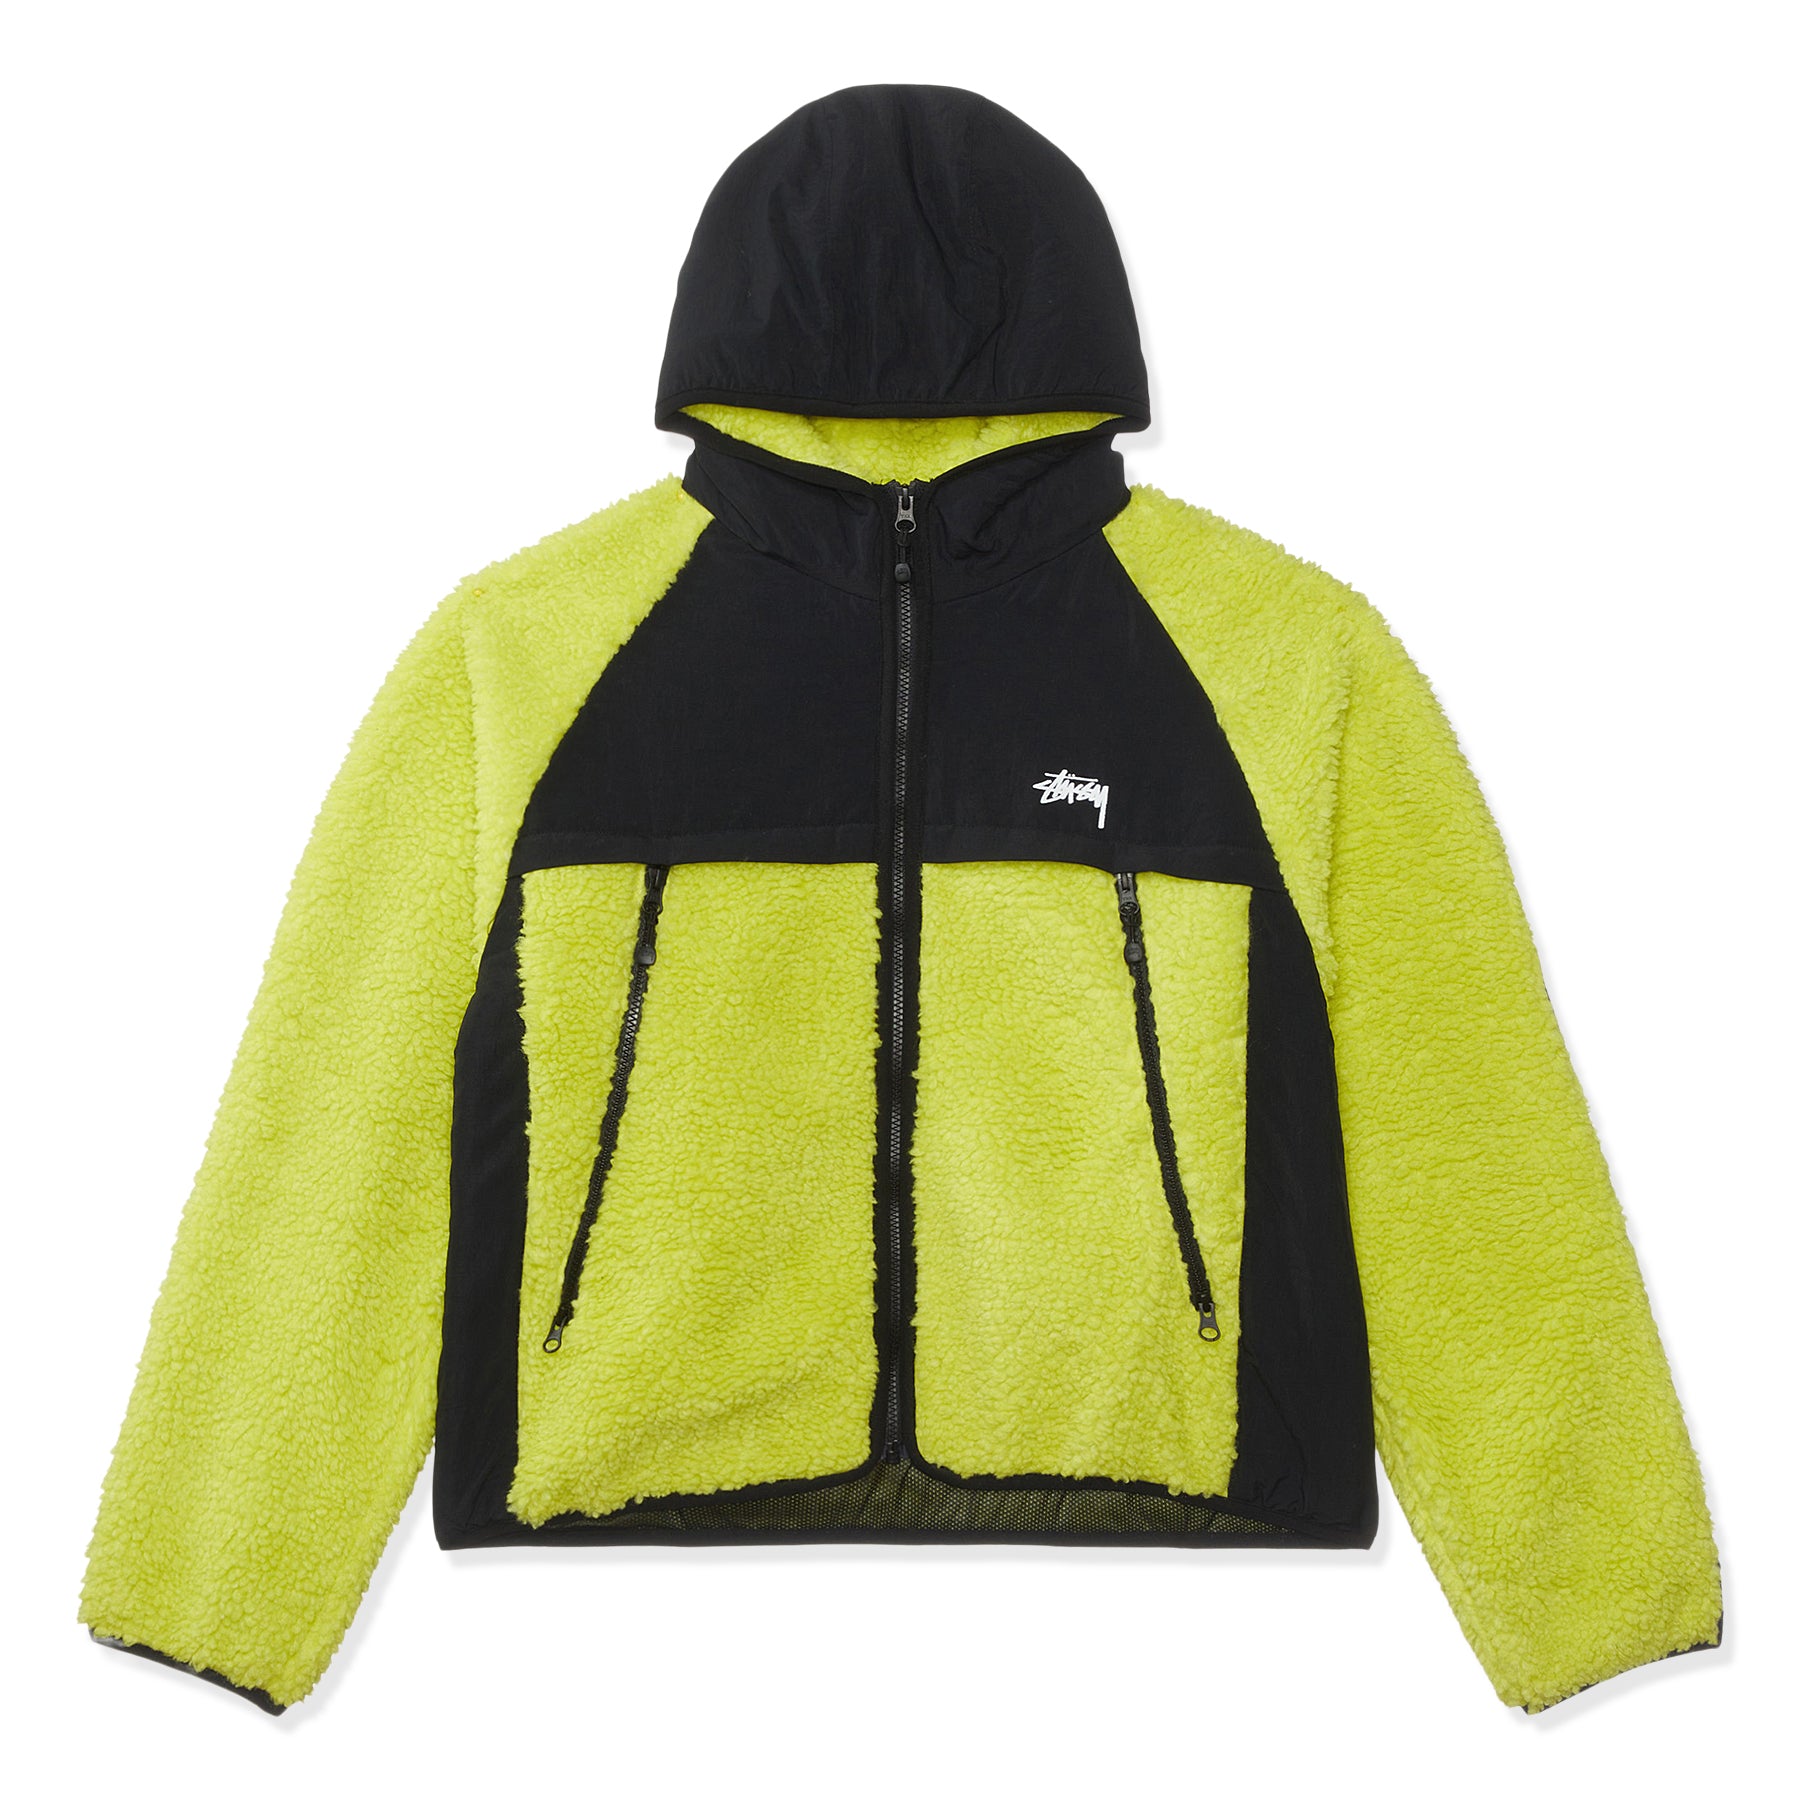 Куртка Stussy Unisex Sherpa Paneled Hooded, желтый/черный